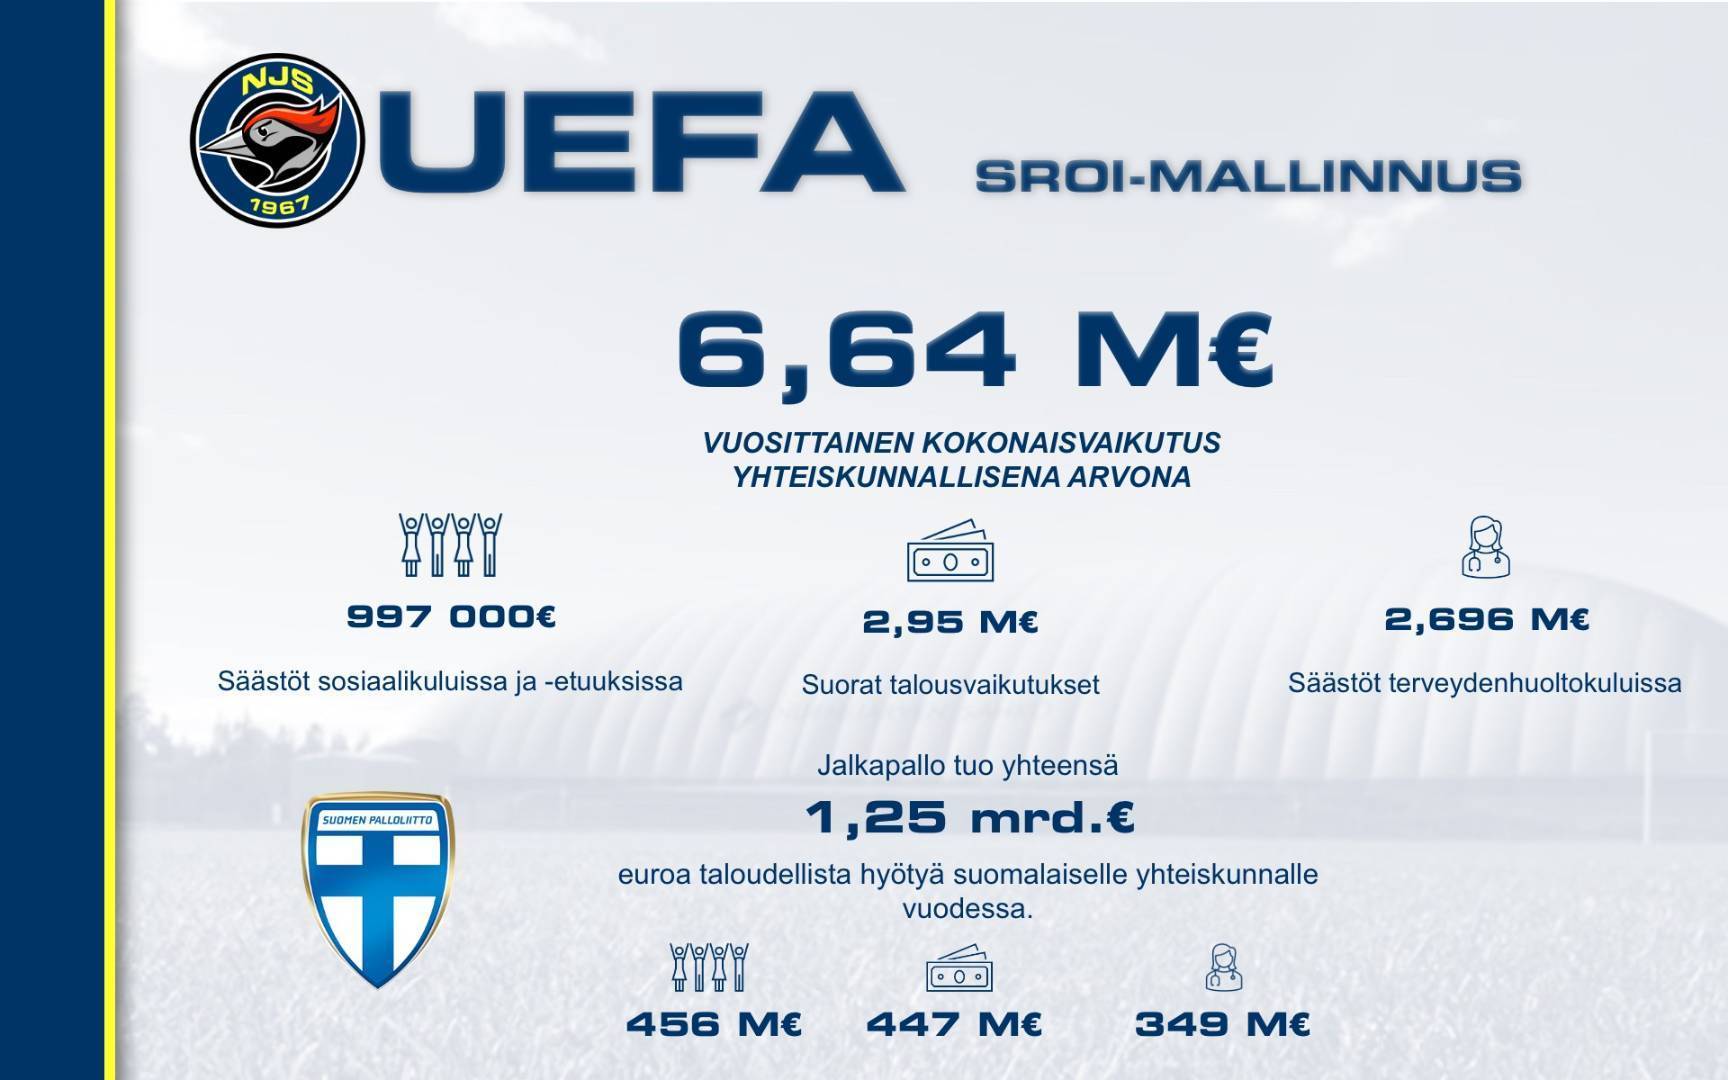 NJS UEFA SROI valmistunut - toiminnan vuosittainen arvo yli 6,5 miljoonaa euroa